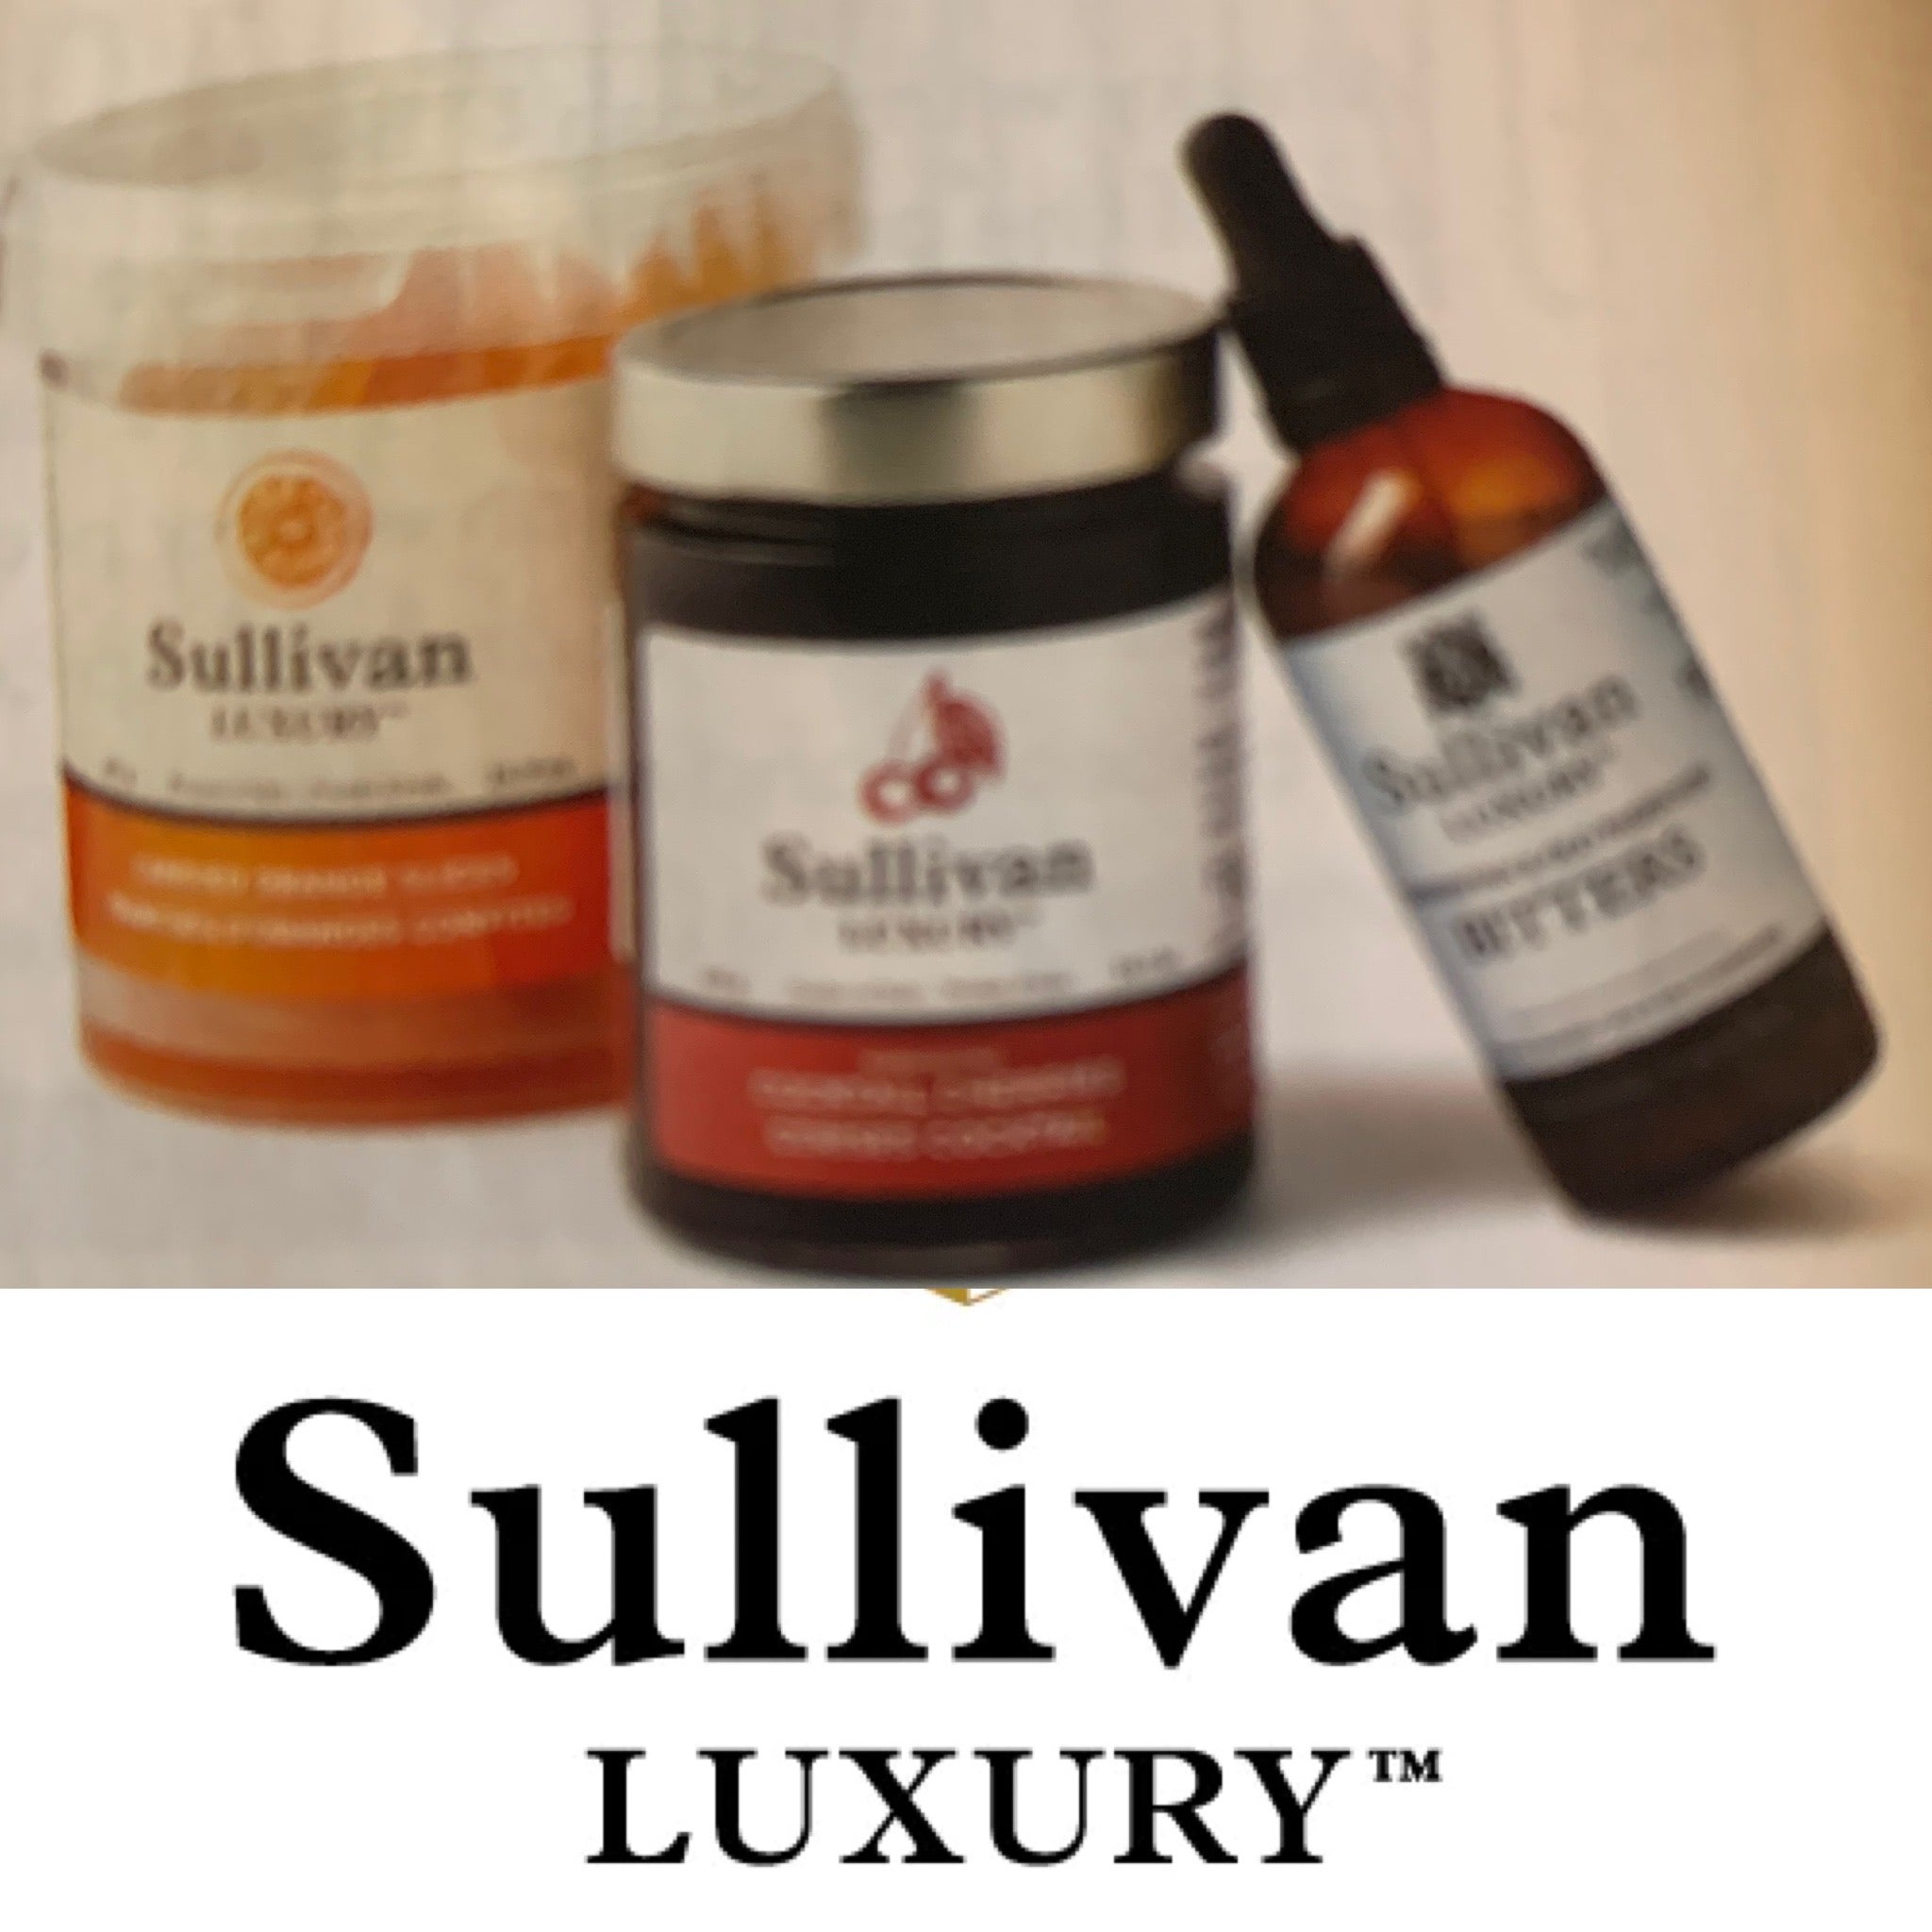 Sullivan Luxury Amarena and Maraschino Cherries